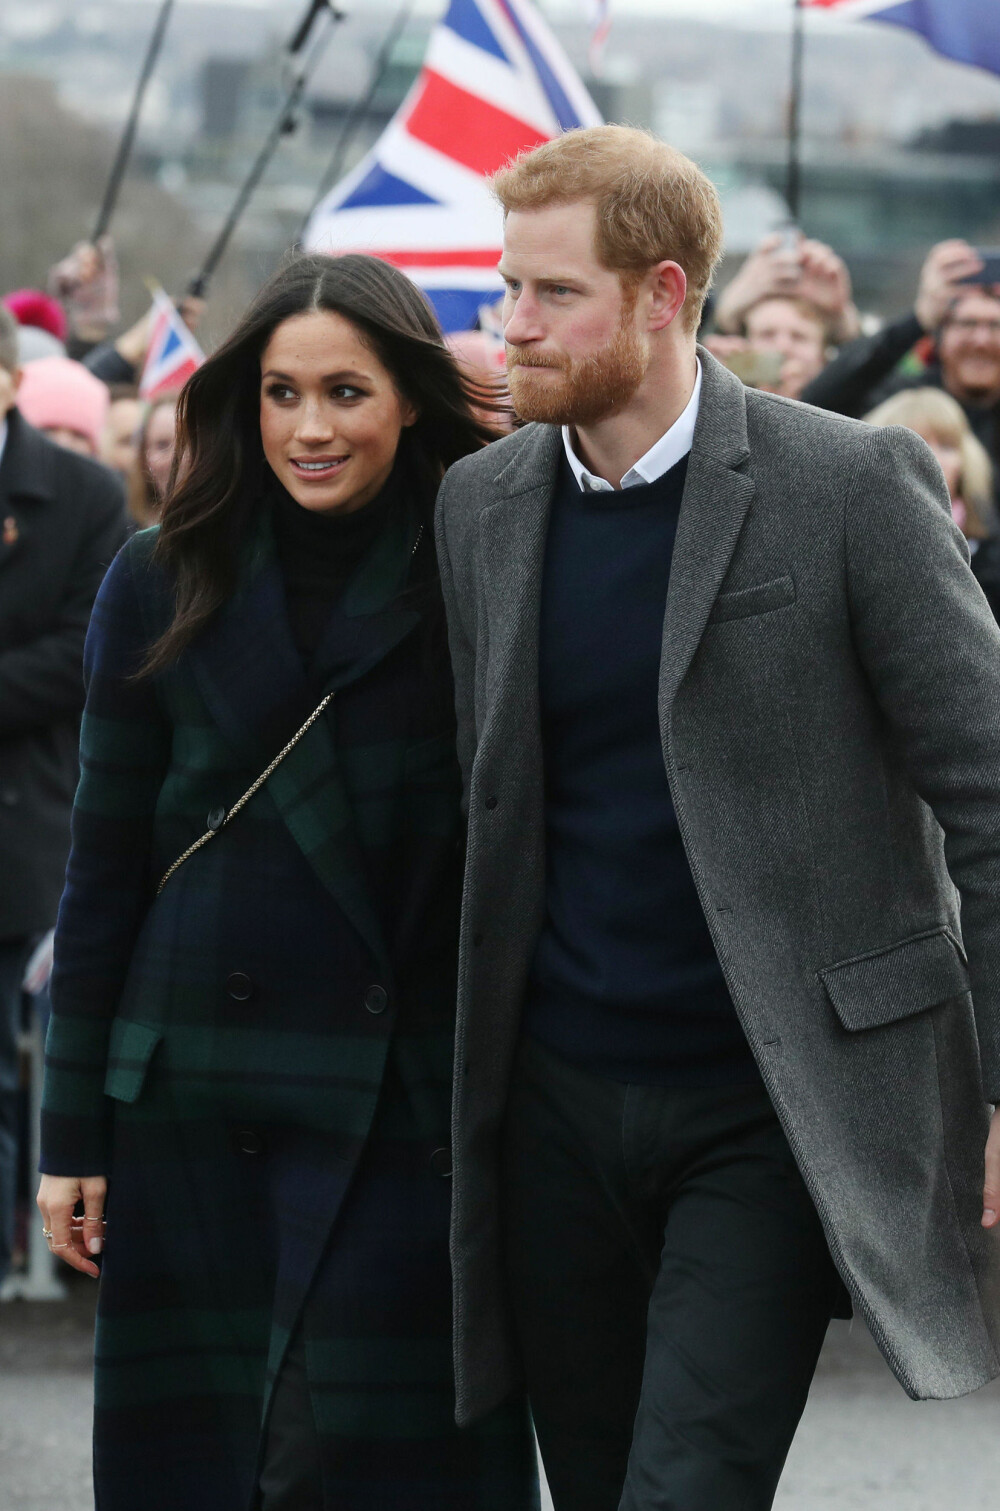 POPULÆRT PAR: Prins Harry og Meghan Markle har snart hele verdens øyne rettet mot seg, når de gifter seg om mindre enn to uker. 